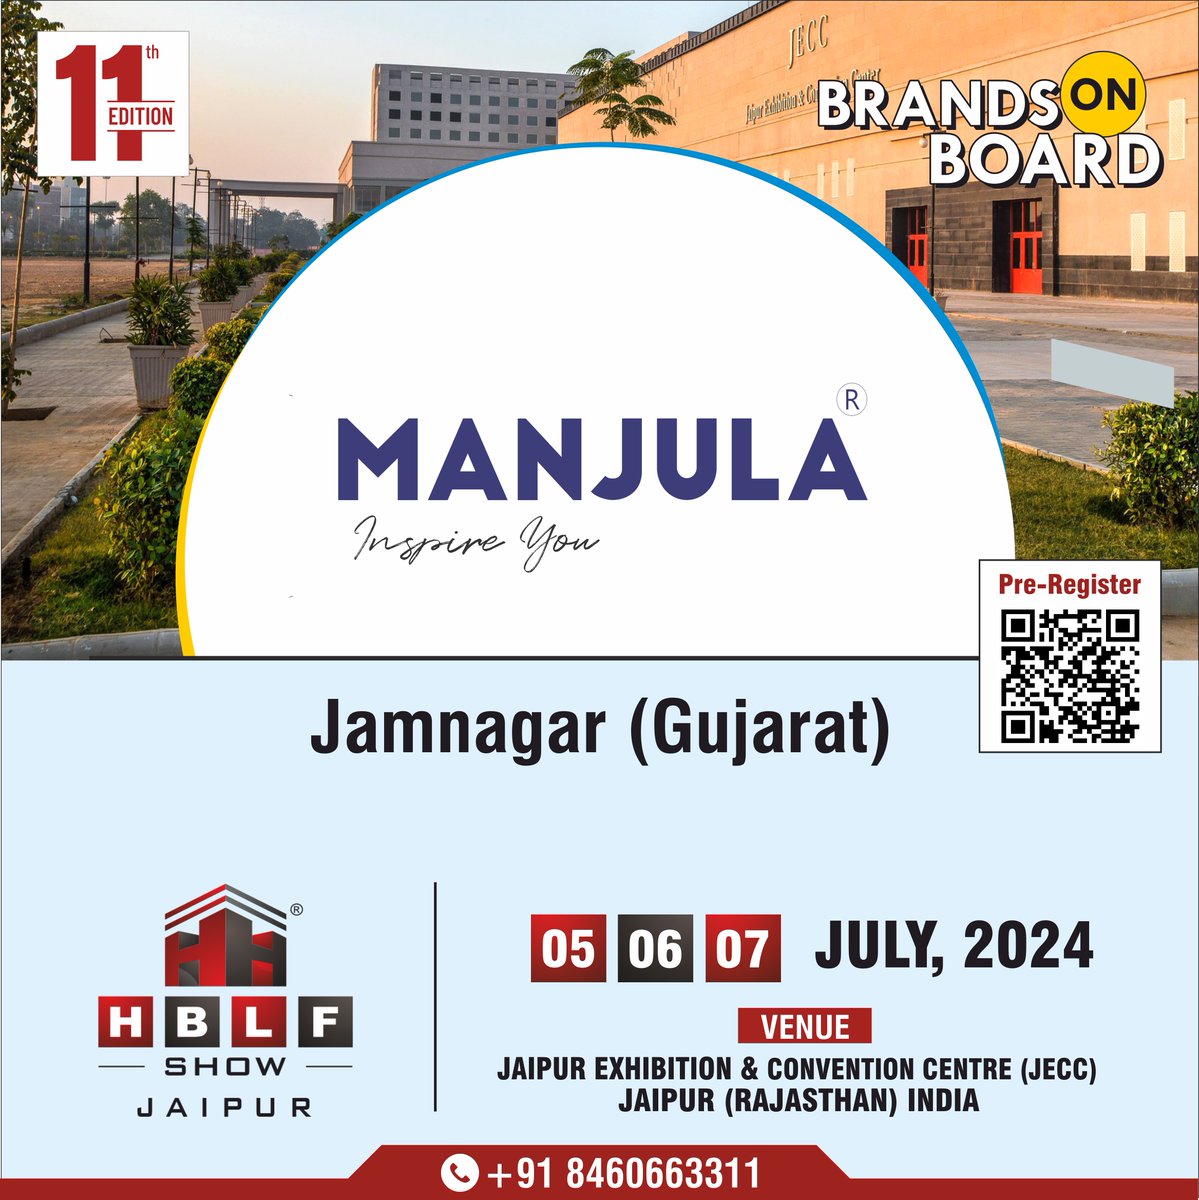 MANJULA: Join us at HBLF Show Jaipur, 05-06-07 July 2024 at JECC Rajasthan - See You There!

#Manjula #ManjulaHardware #ManjulaJamnagar #ManjulaBrass #BrassHardware #UdayBrass #DoorHardware #HardwareManufacturer #HardwareFittings #Jamnagar #BuildersHardware #HBLFShow #Jaipur